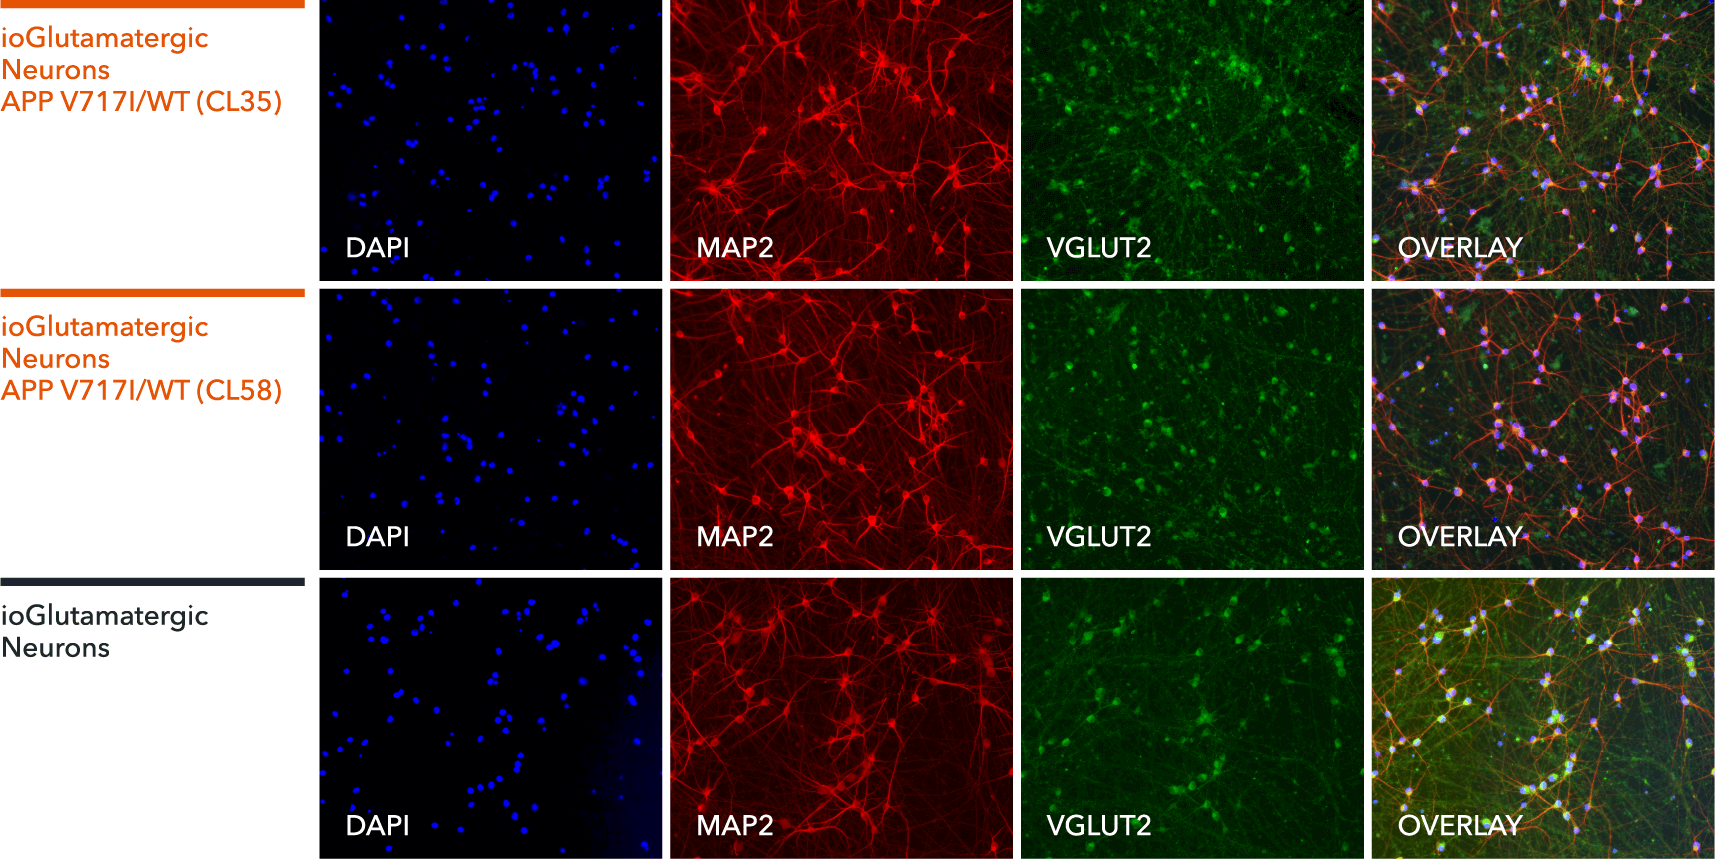 io1067-io1068-ioGlutamatergic Neurons APP-V717I-het-ICC-MAP2-VGLUT2